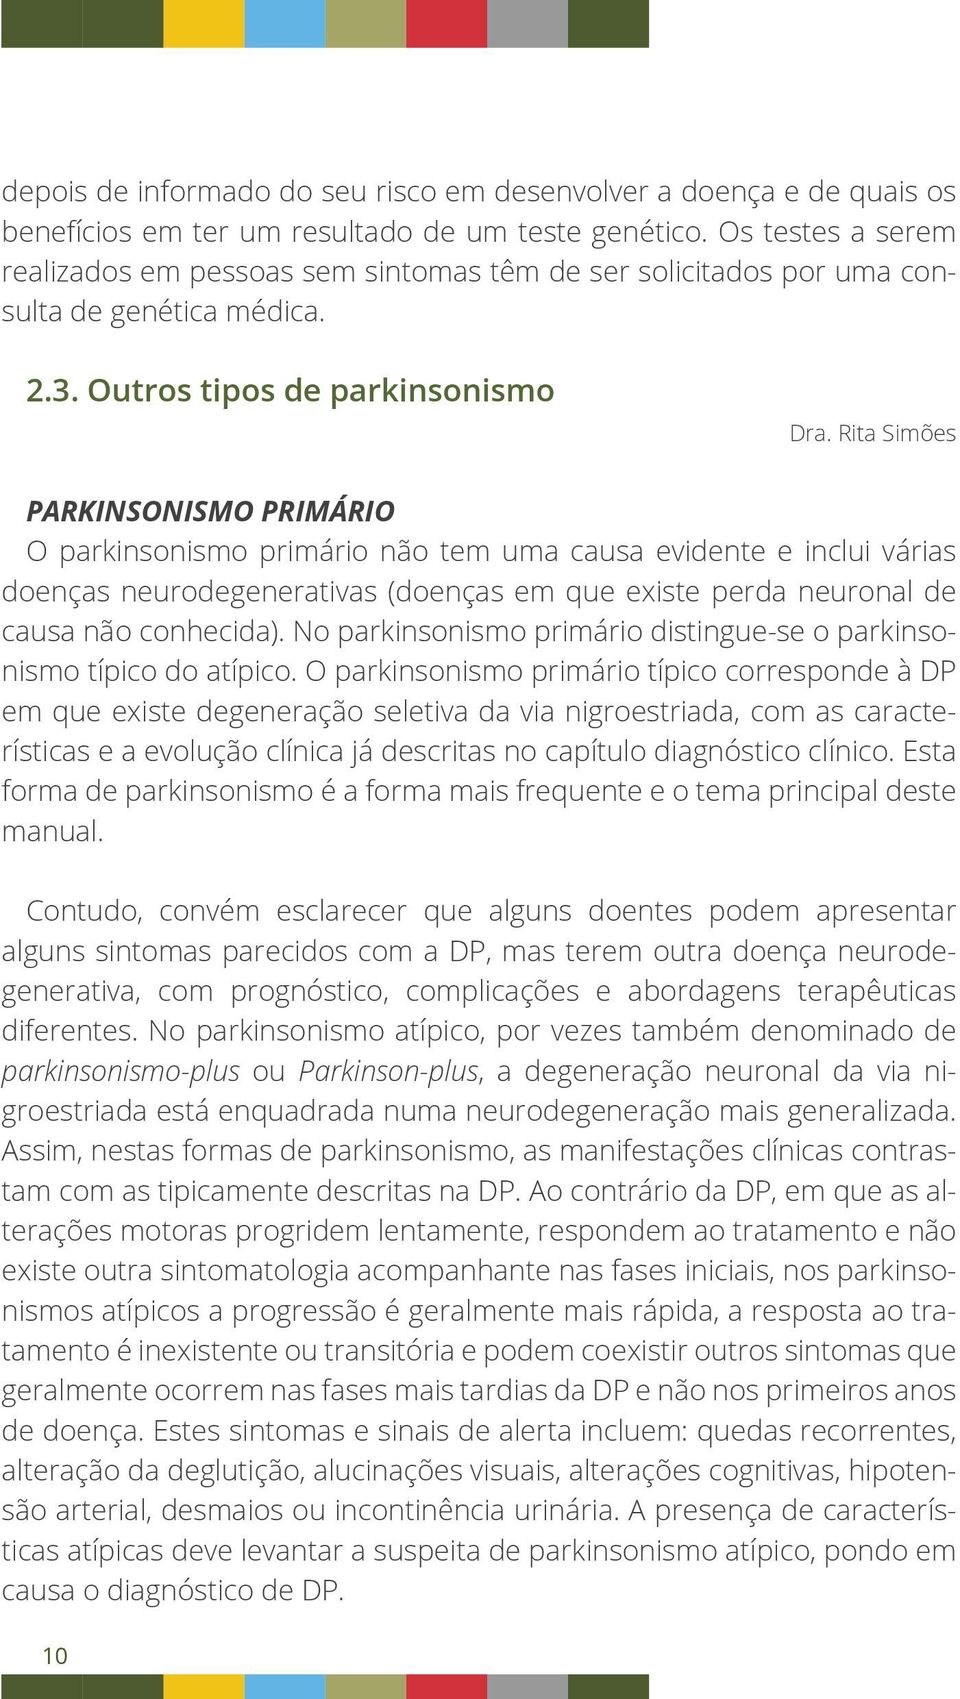 Rita Simões Parkinsonismo primário O parkinsonismo primário não tem uma causa evidente e inclui várias doenças neurodegenerativas (doenças em que existe perda neuronal de causa não conhecida).